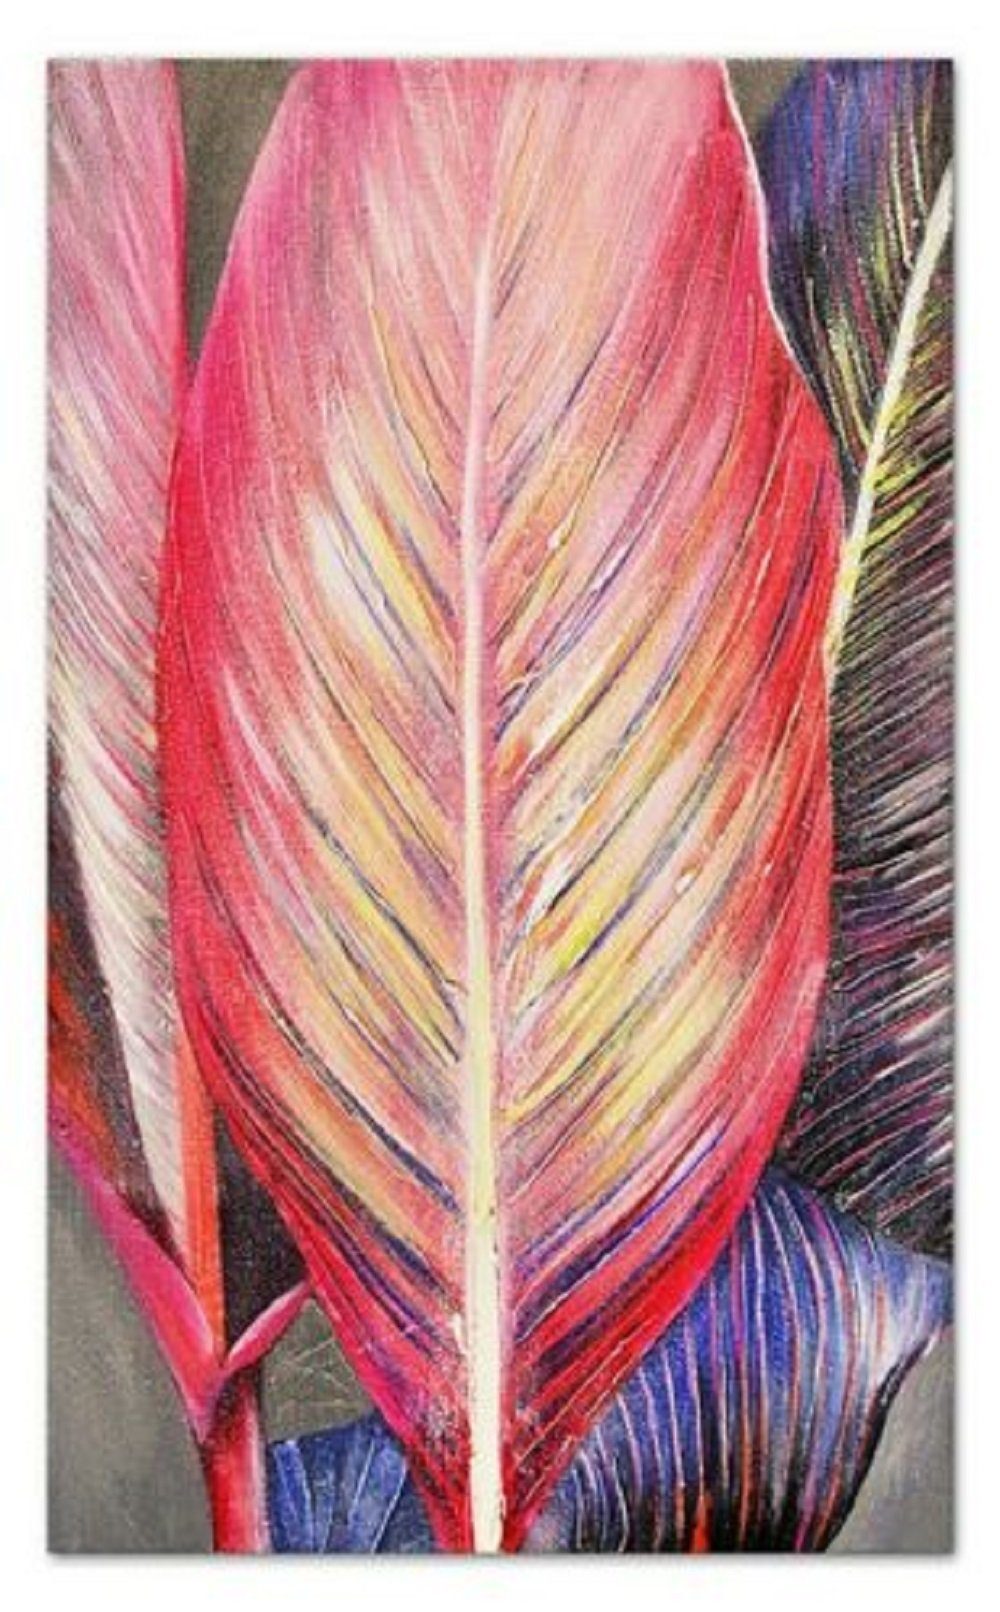 Ölbild Ölbild JVmoebel Farbenfrohes Abstrakte Handarbeit Gemälde G100122, Bild Abstrakt Abstrakt